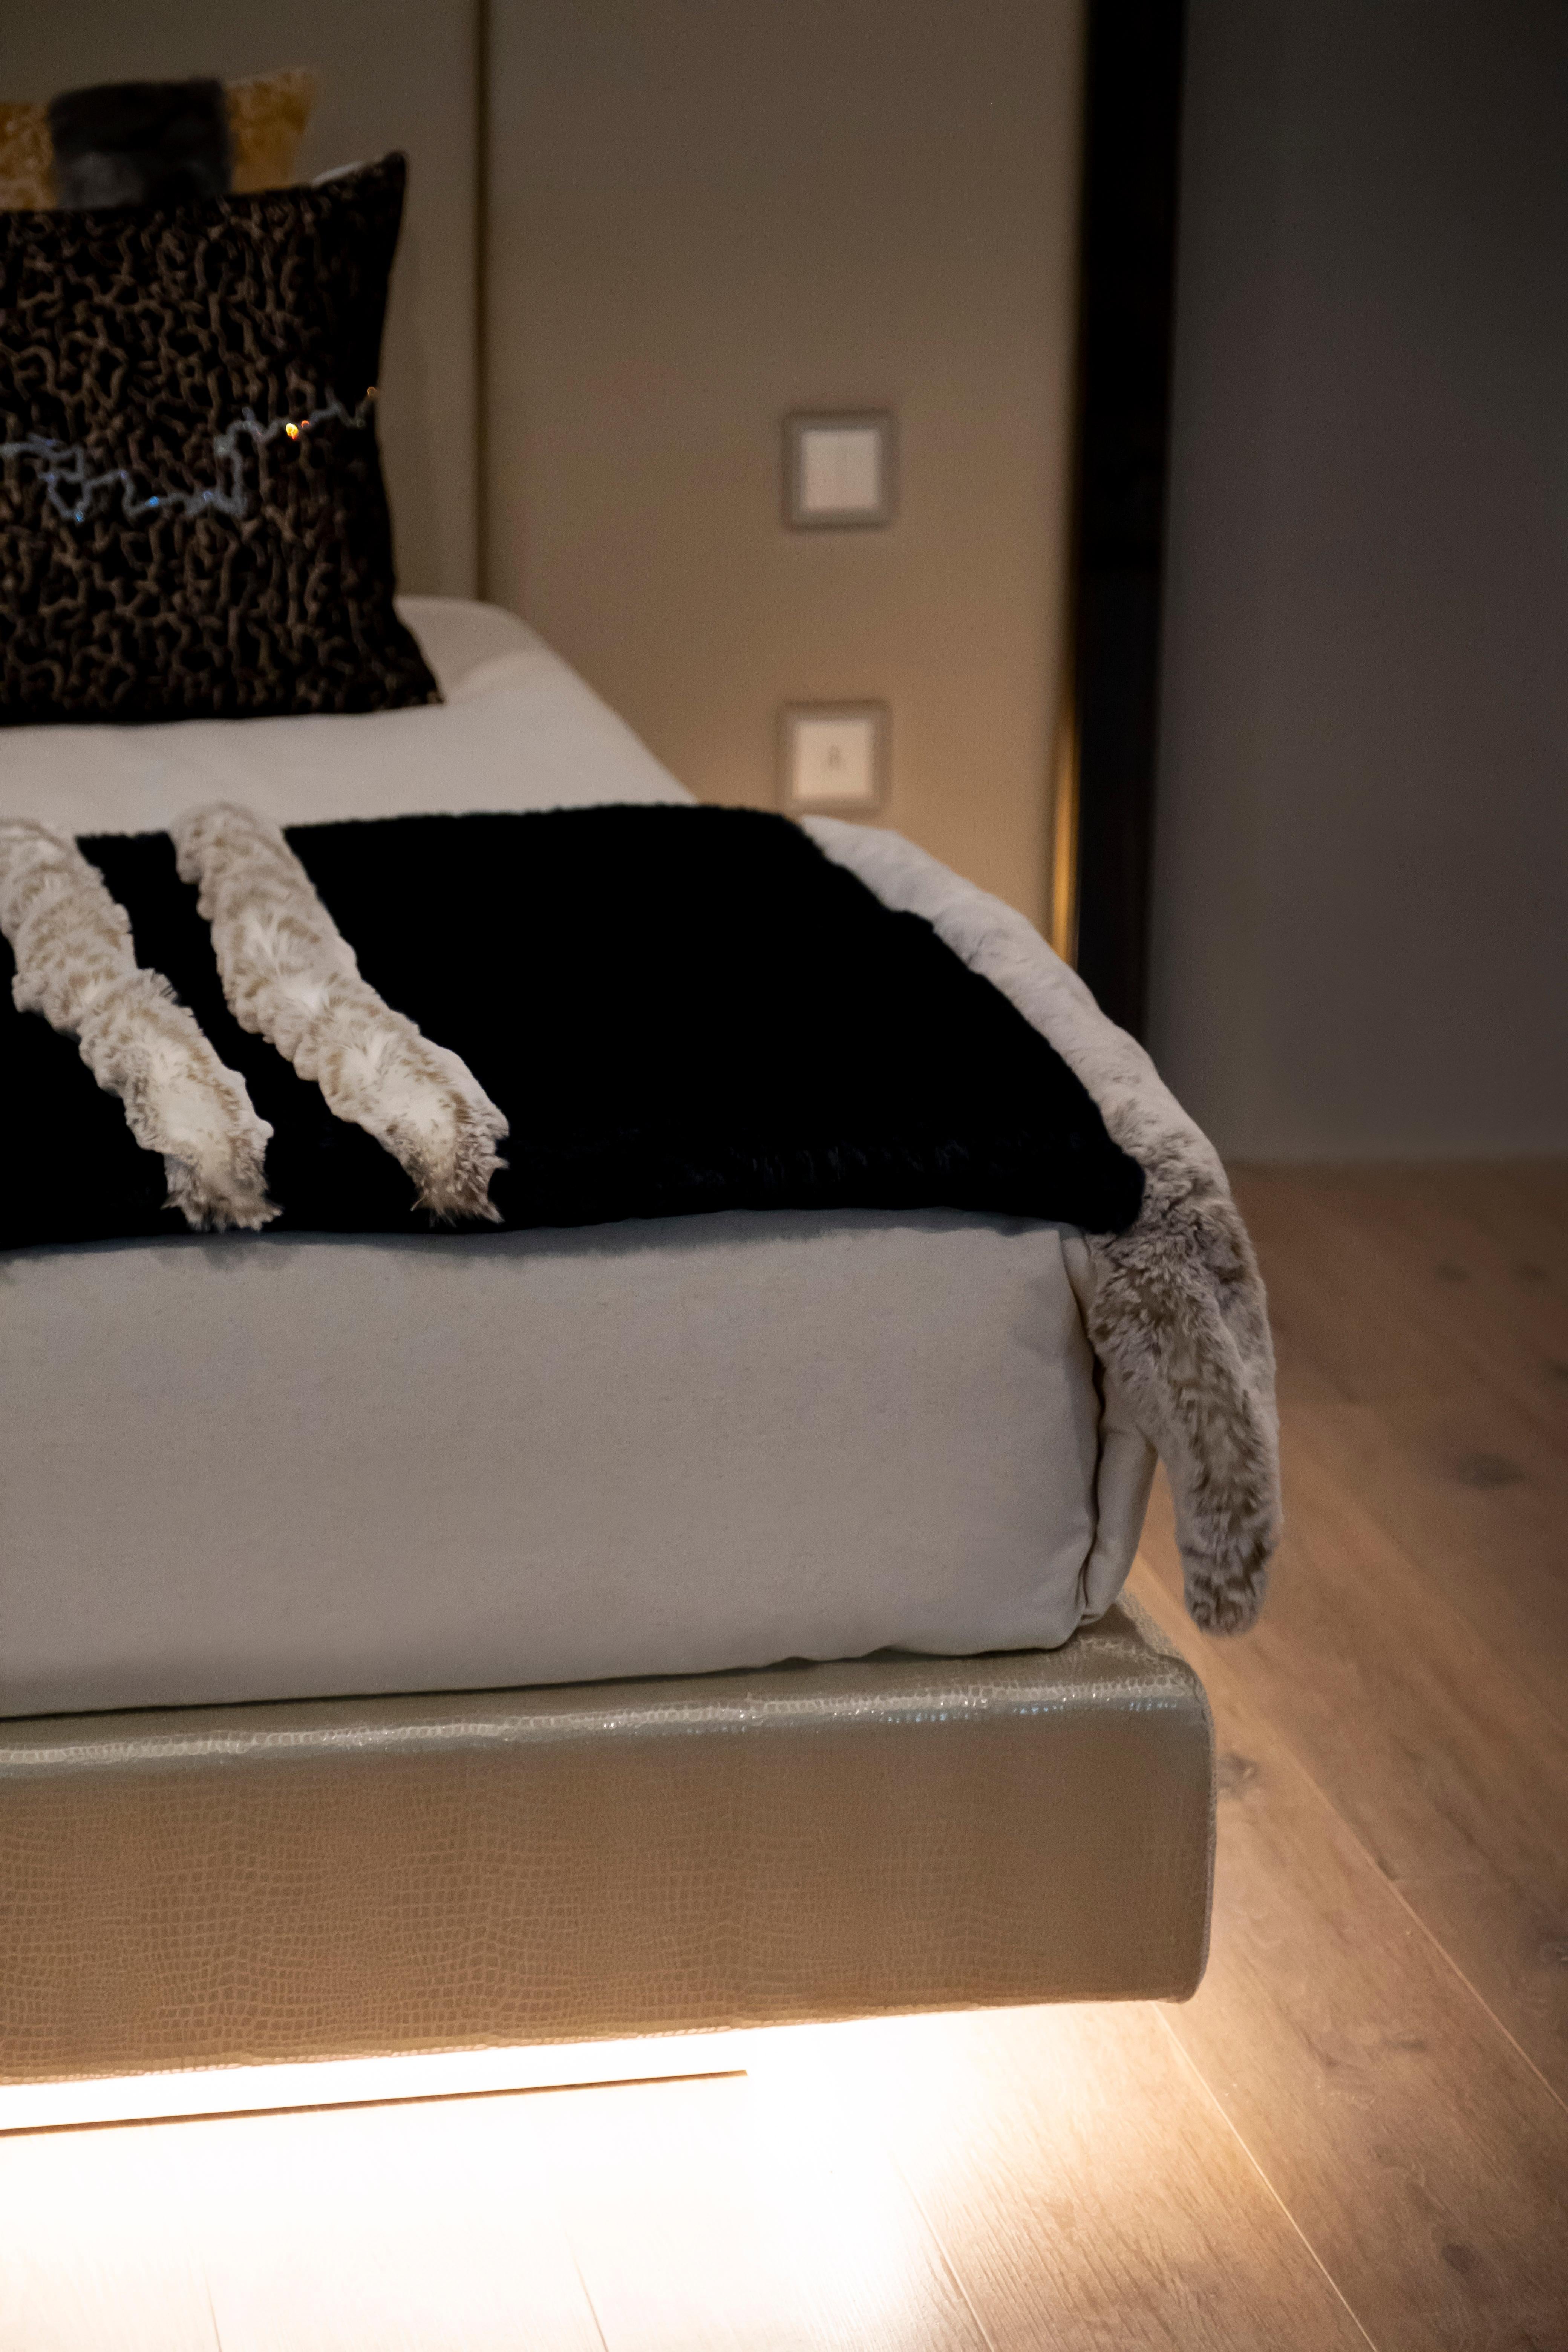 Letti US King Size Bett, Modern Collection, handgefertigt in Portugal - Europa von GF Modern.

Dieses Angebot bezieht sich auf ein US-King-Size-Bett, andere Größen sind möglich.

Die eleganten Letti  Das Bett ist mit beigefarbenem, hochwertigem